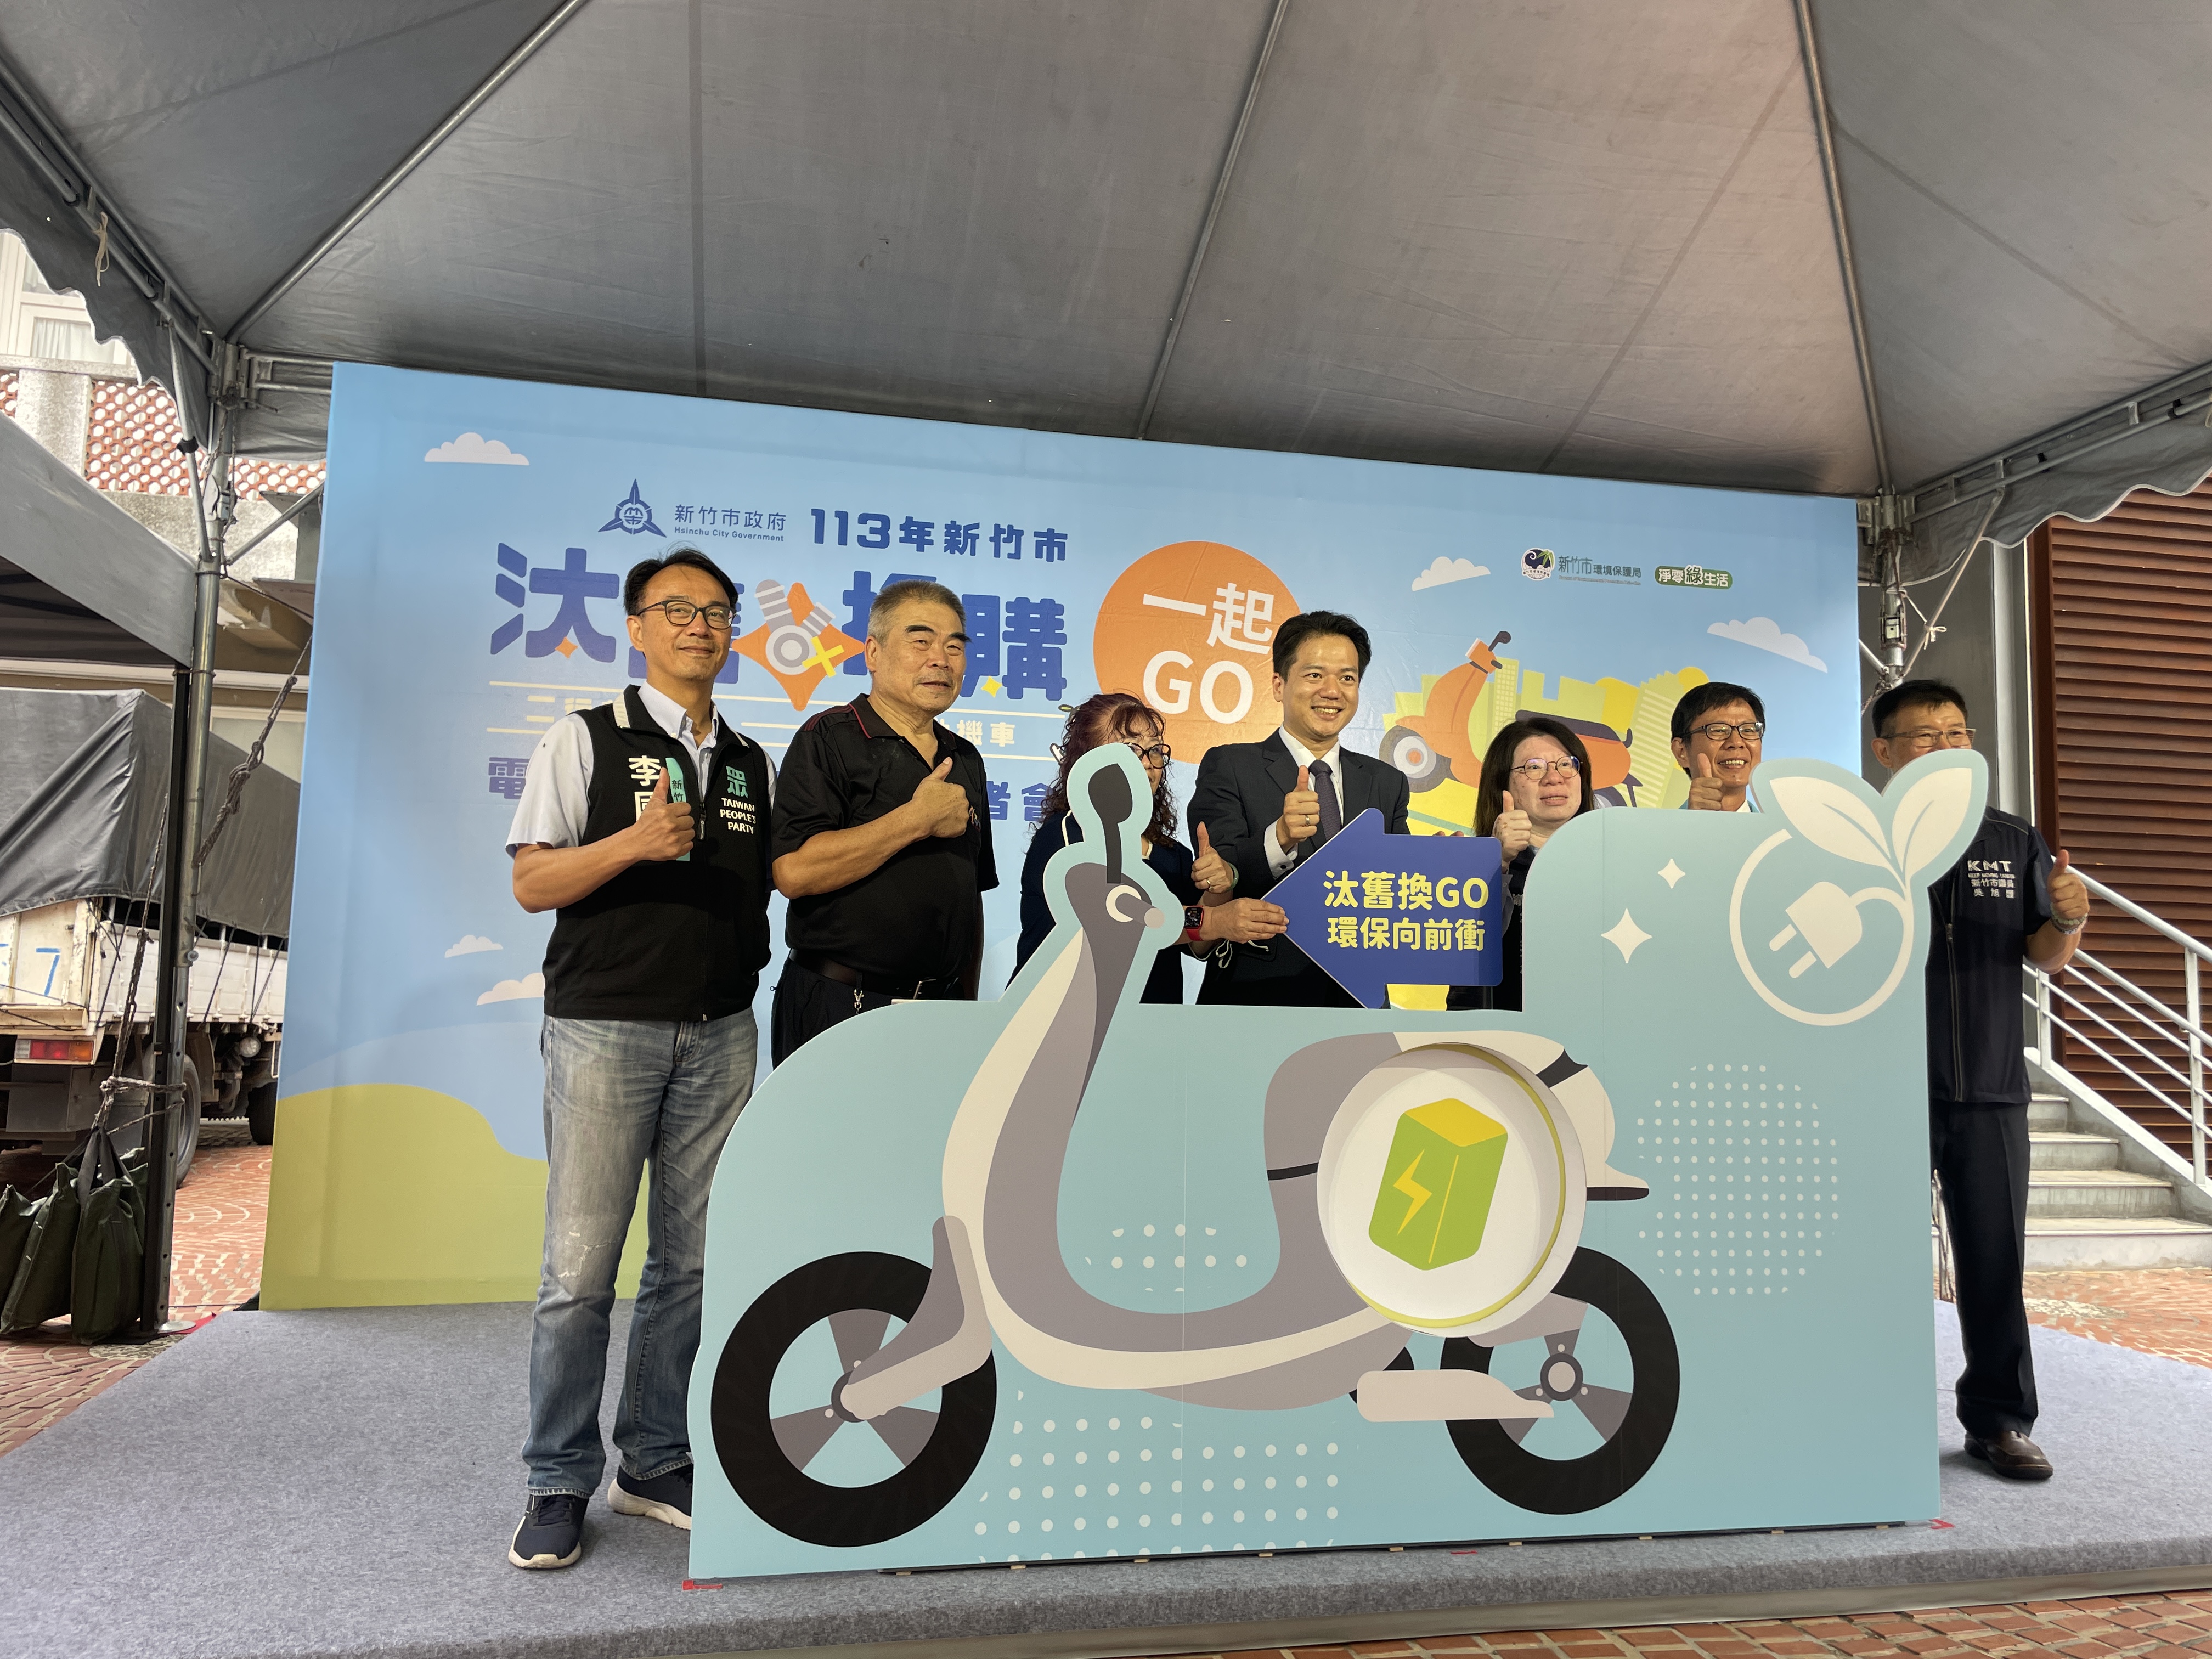 新竹市环保局今天在幸福广场举办「新竹市电动机车汰旧换新加码补助」记者会，公布今年度的汰旧换购电动机车方案。记者张裕珍／摄影